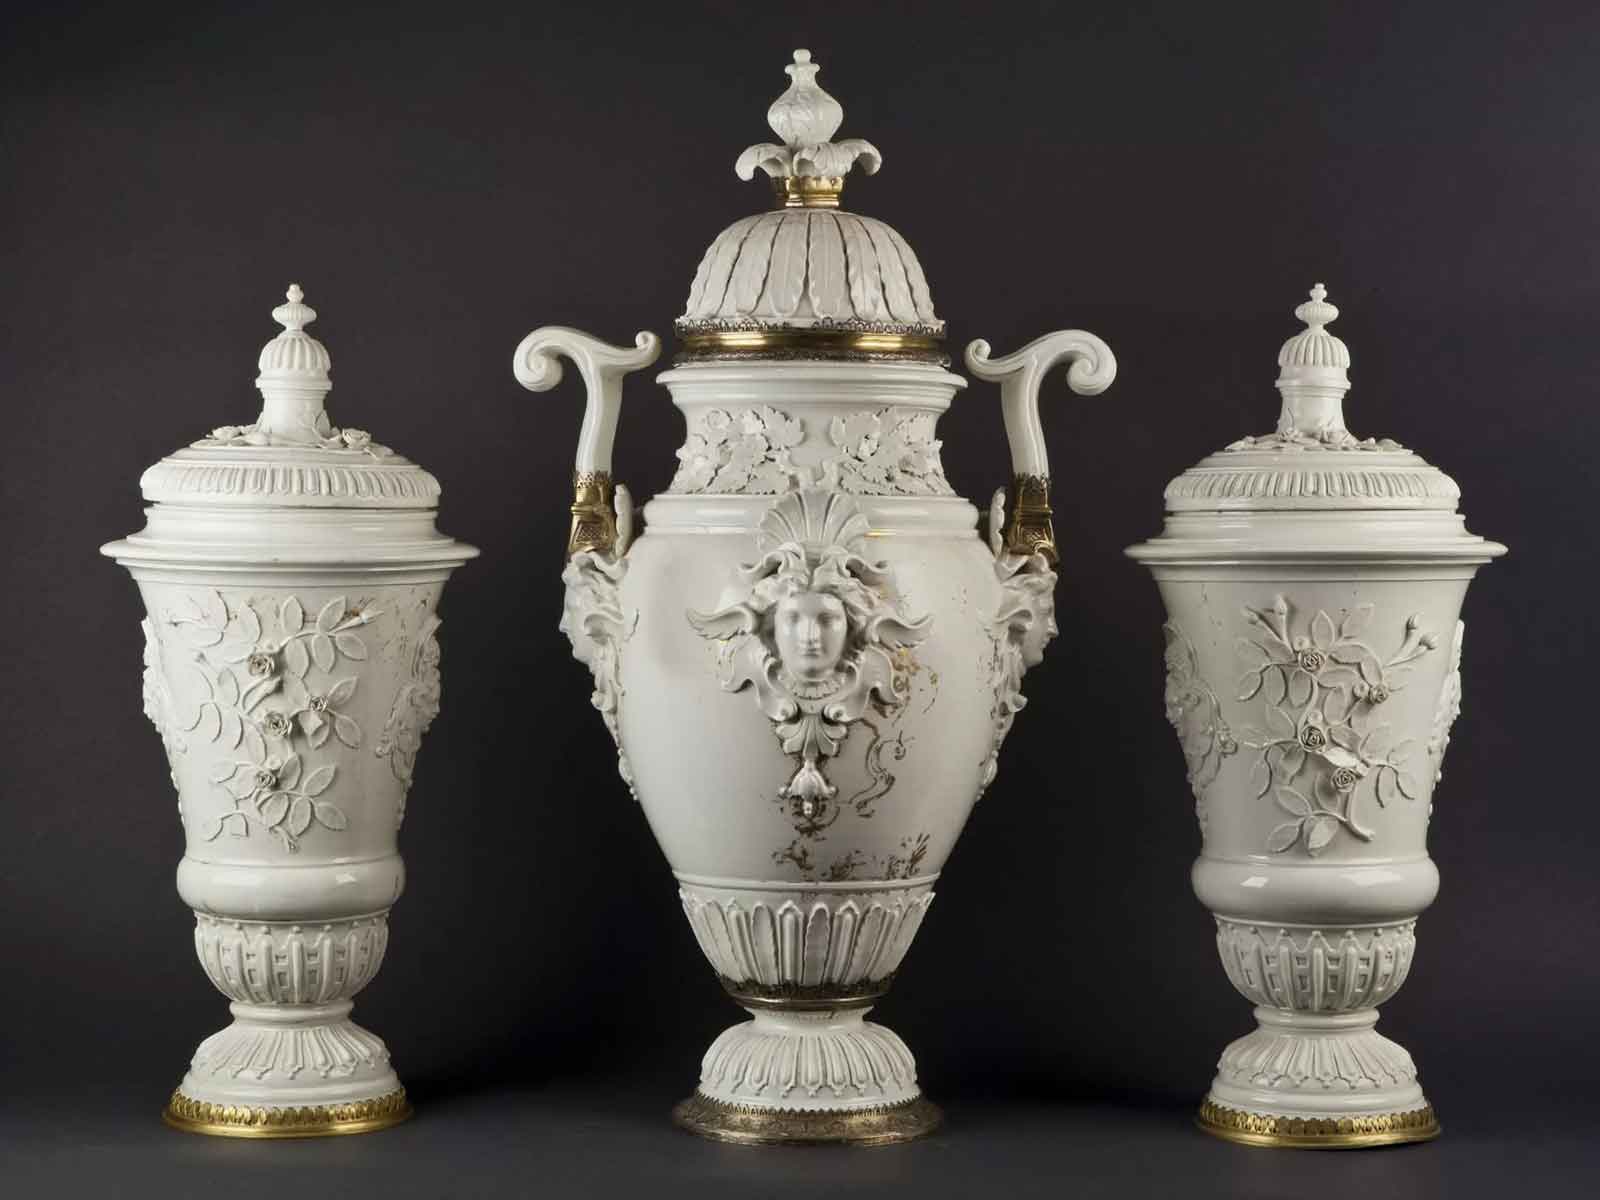 Tre grandi vasi in porcellana bianca con dettagli decorativi rilievi floreali e volti, manici eleganti e accentuazioni dorate su base scura.